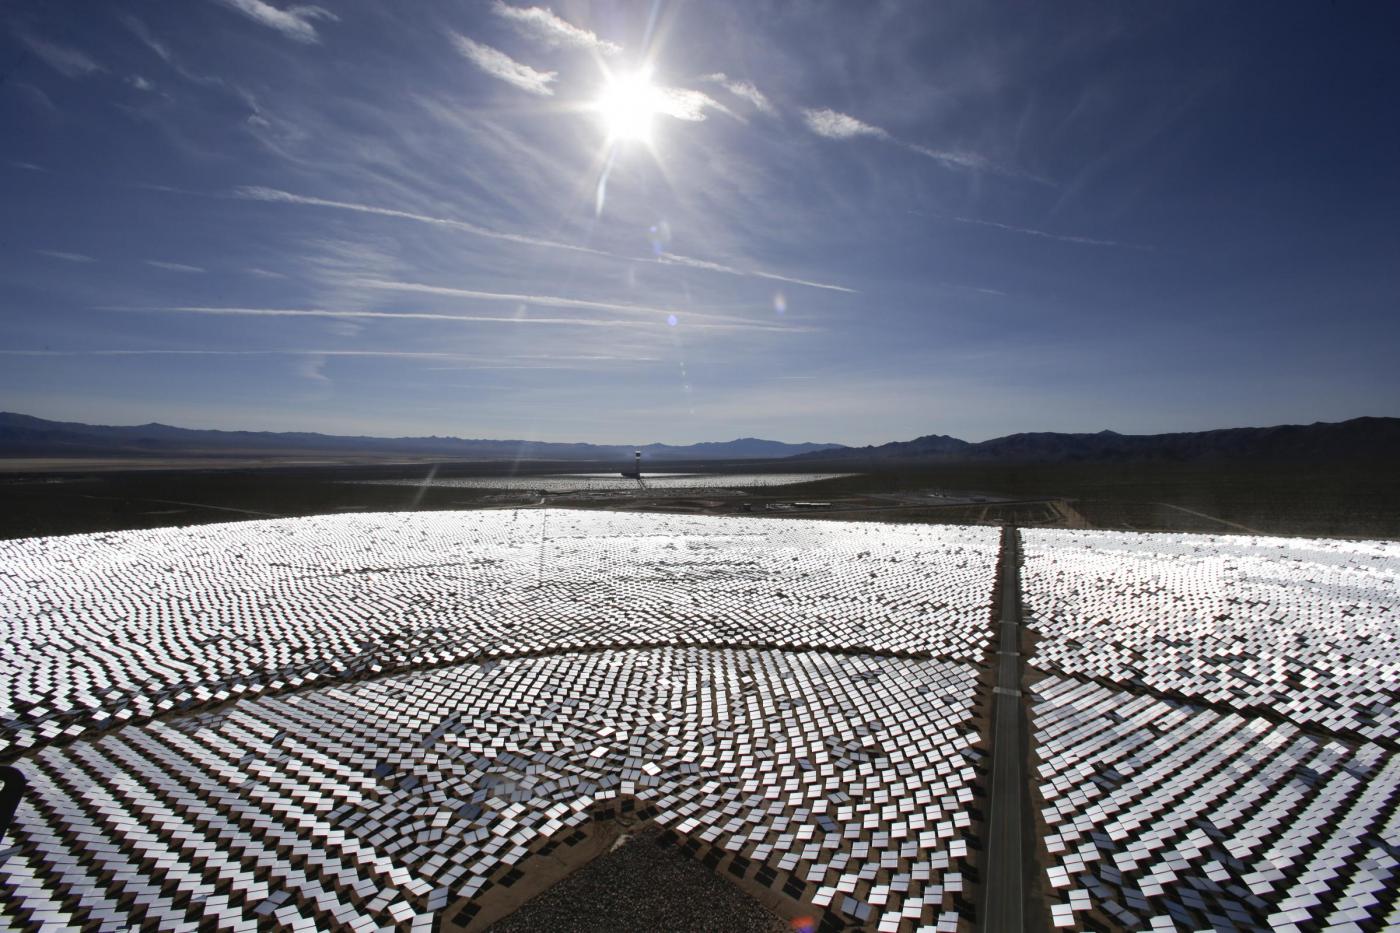 L'impianto solare del Nevada